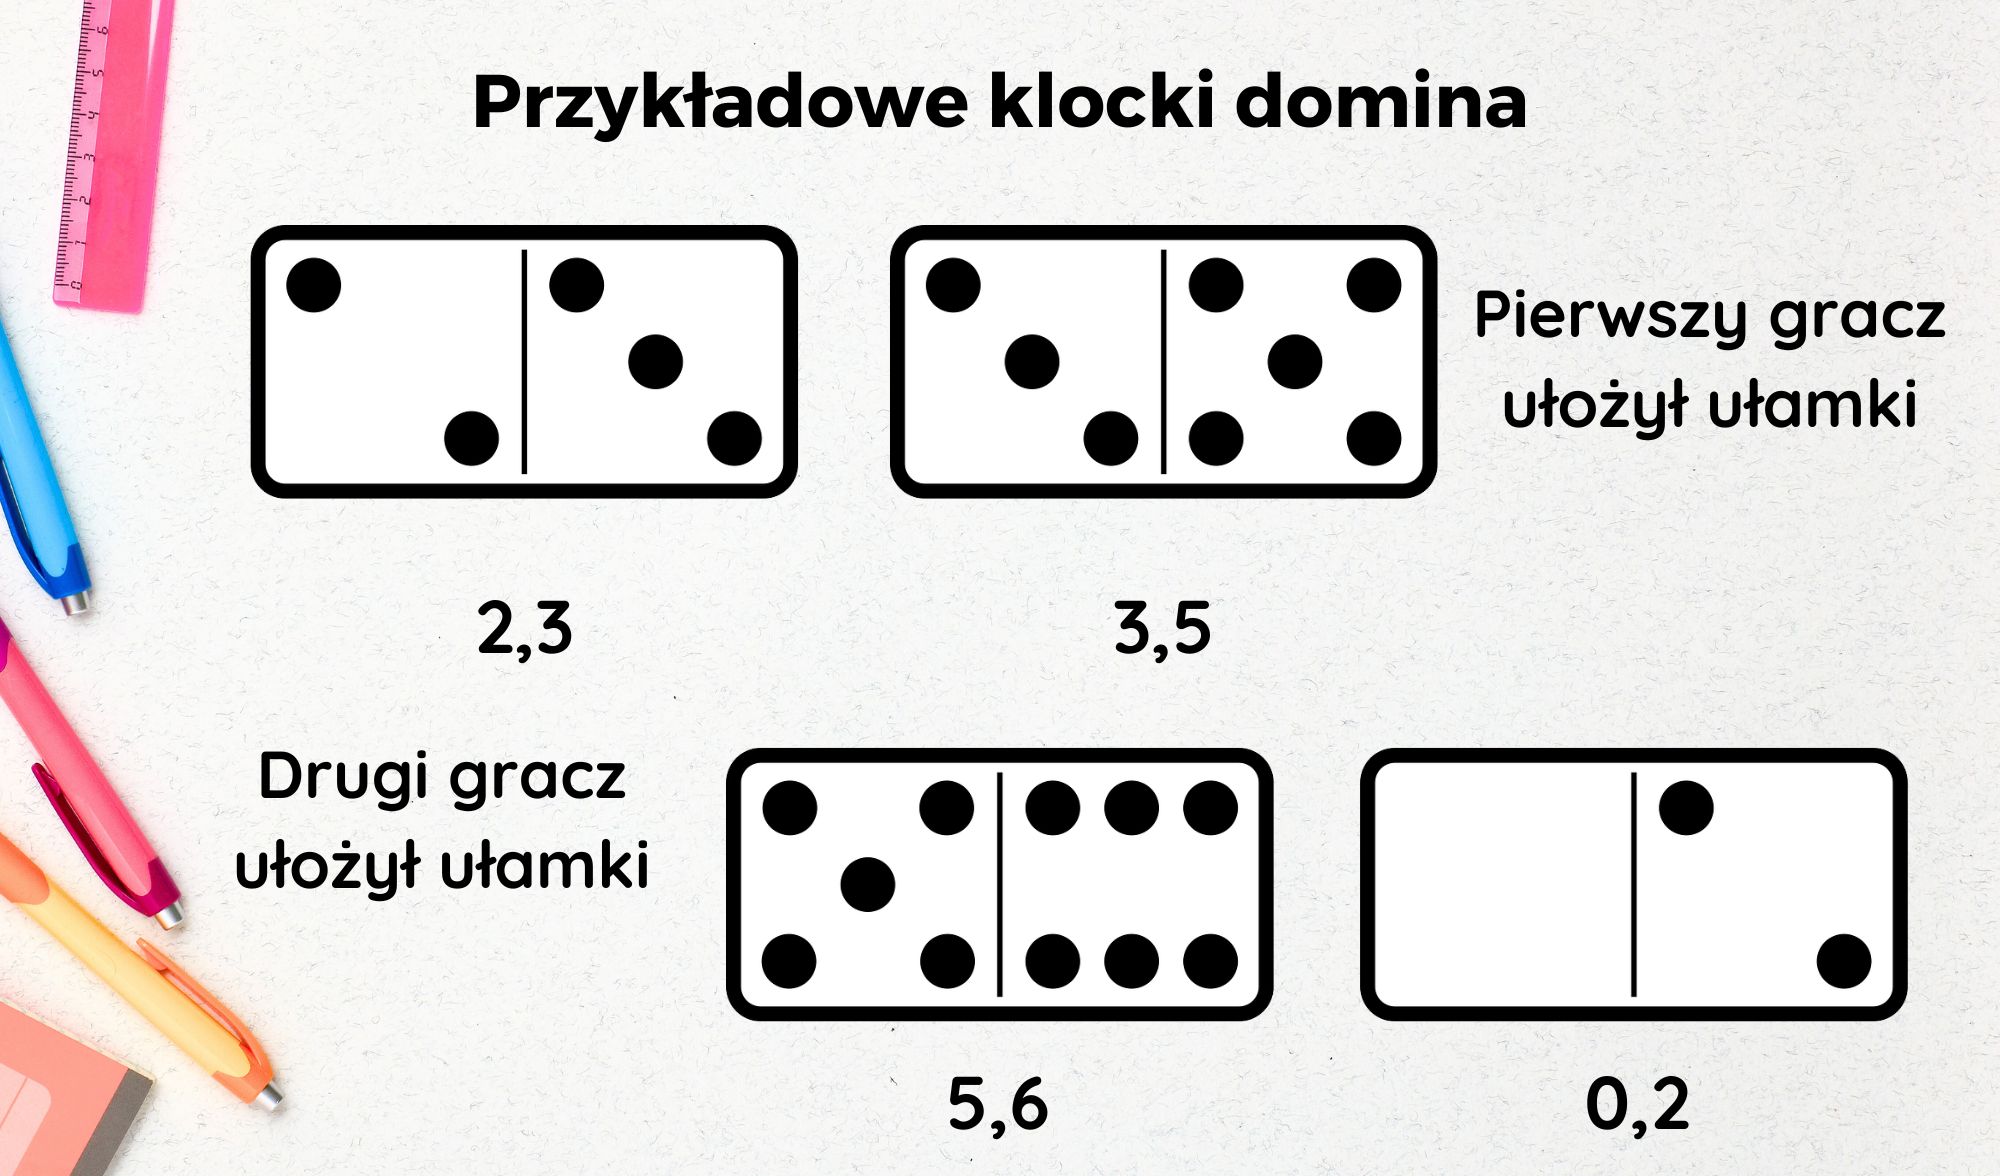 gra w domino nauka matematyki ulamki dziesietne mat4fun 1 -  10 gier matematycznych z domino, które uczą i bawią!